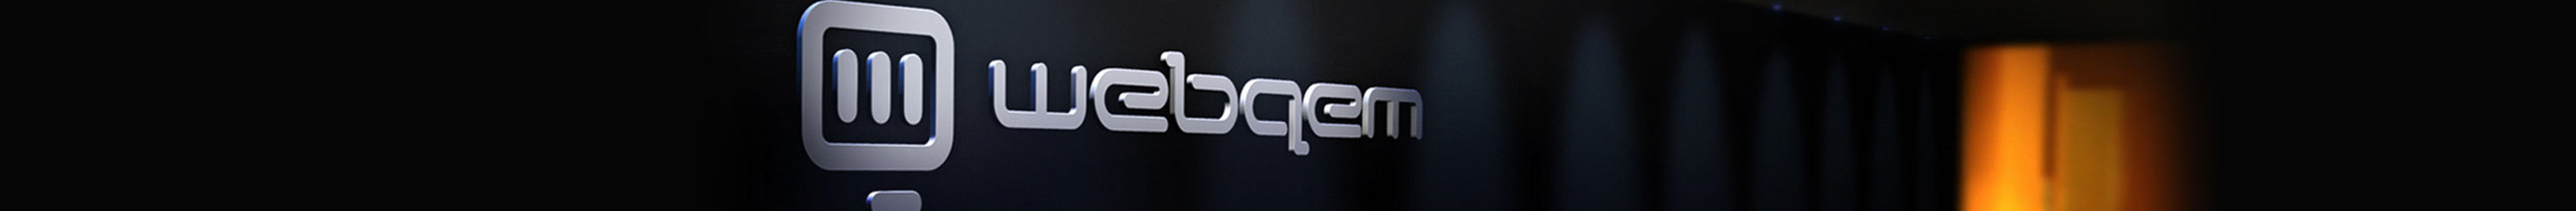 webqem - digital agency's profile banner